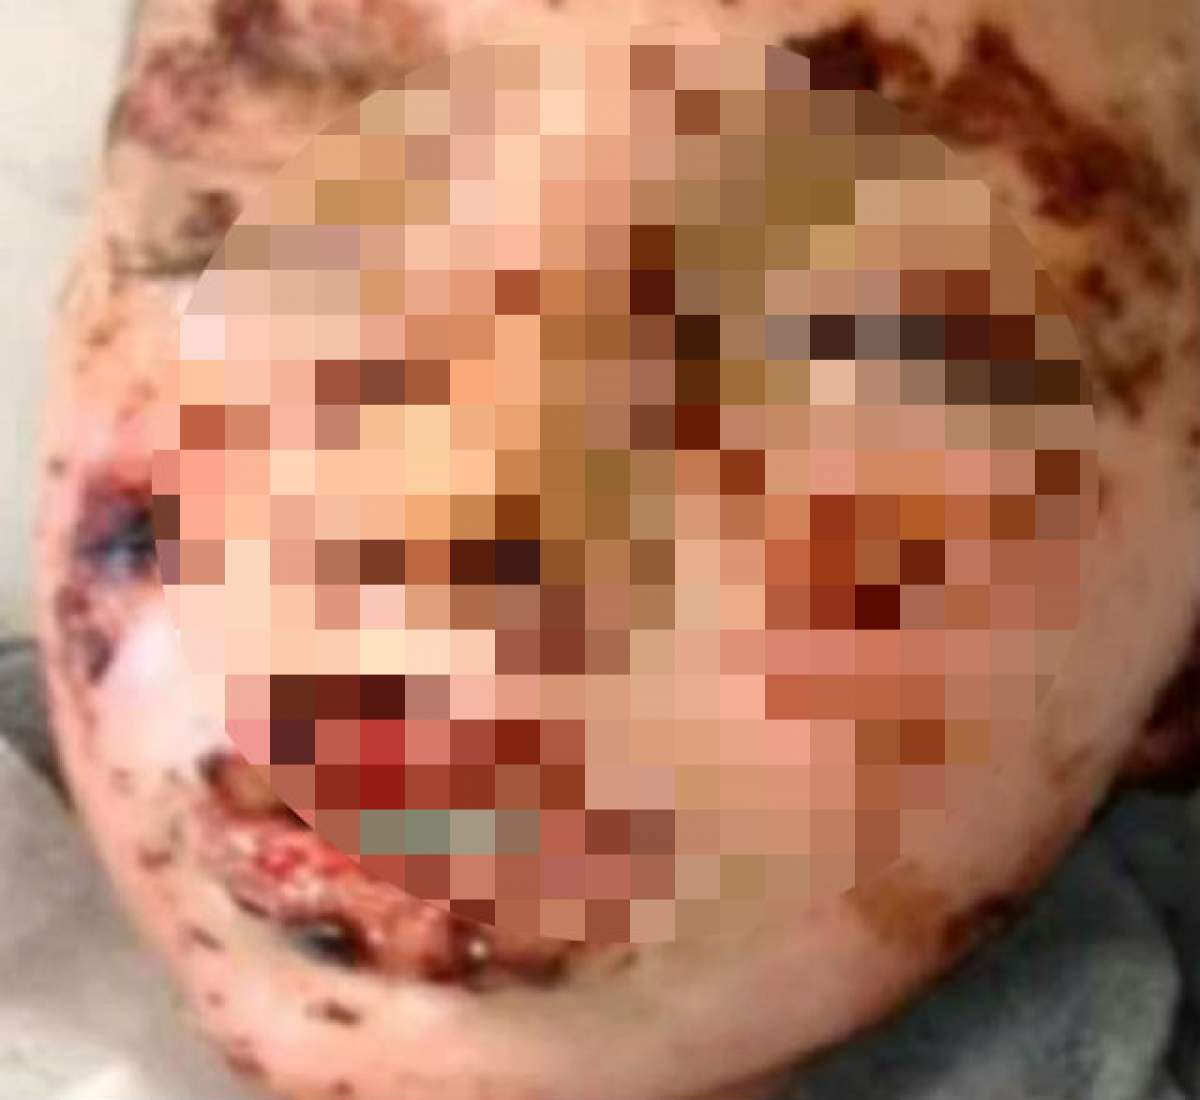 Atenţie, imagini şocante! Ce a păţit un băiat de 13 ani după ce a luat o pastilă pentru răceală şi gripă